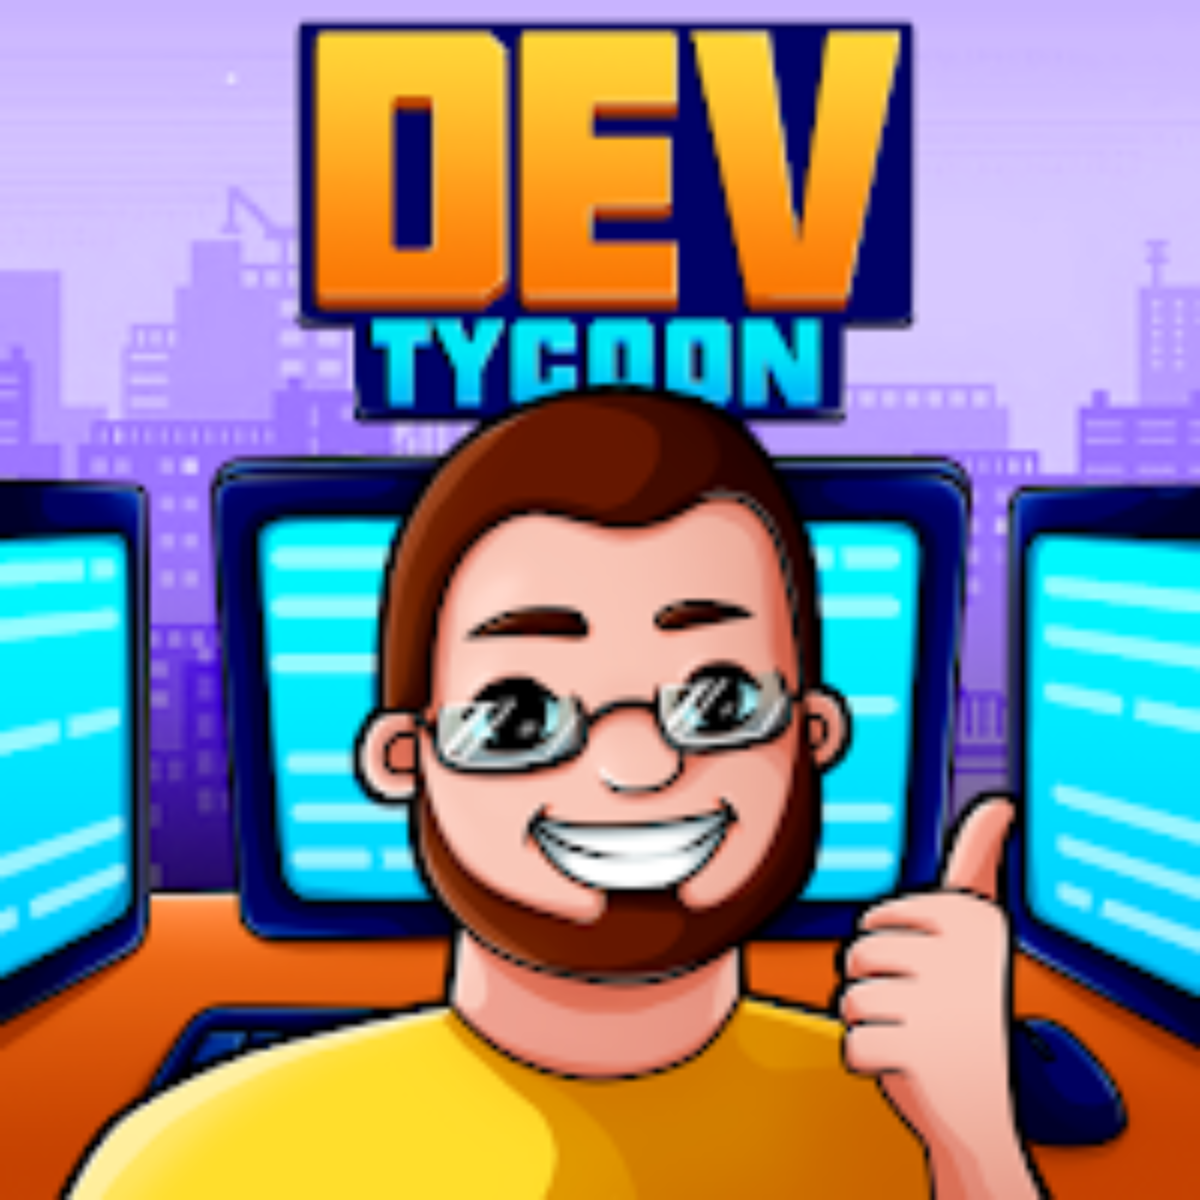 Game Studio Tycoon 3 v 1.4.1 apk mod VERSÃO COMPLETA + DINHEIRO INFINITO -  WR APK